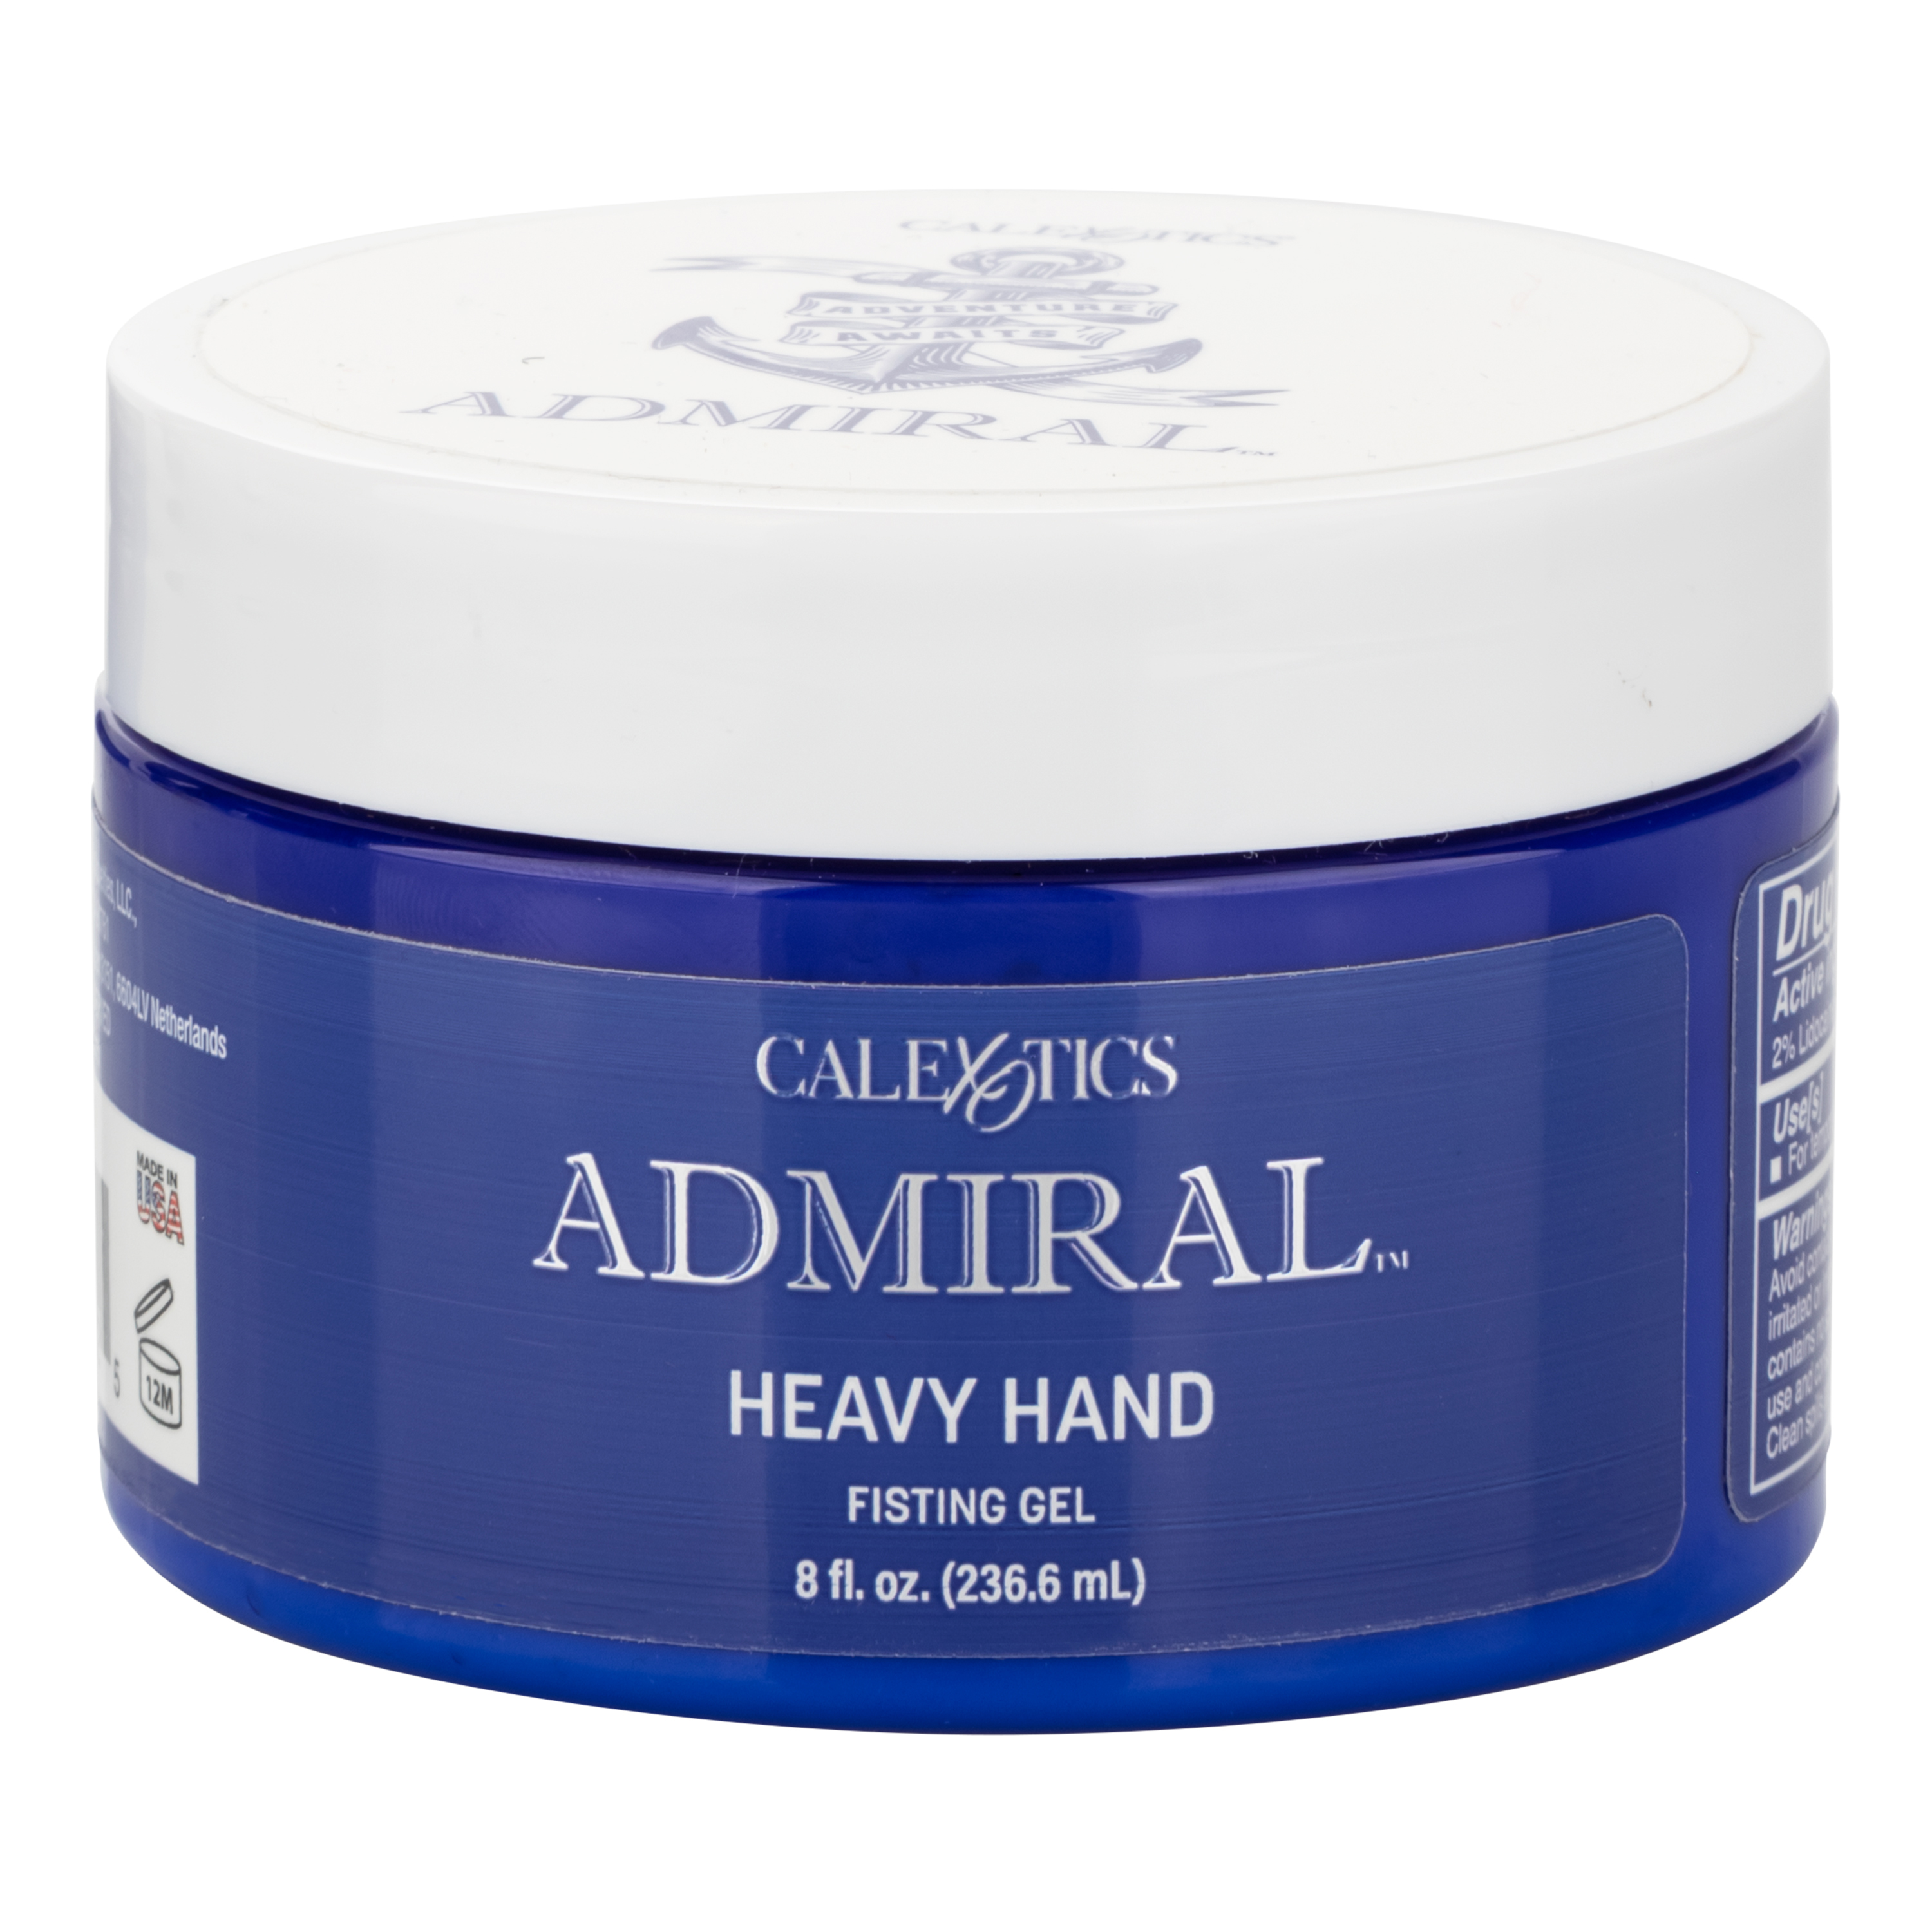 admiral heavy hand fisting gel  fl. oz. 